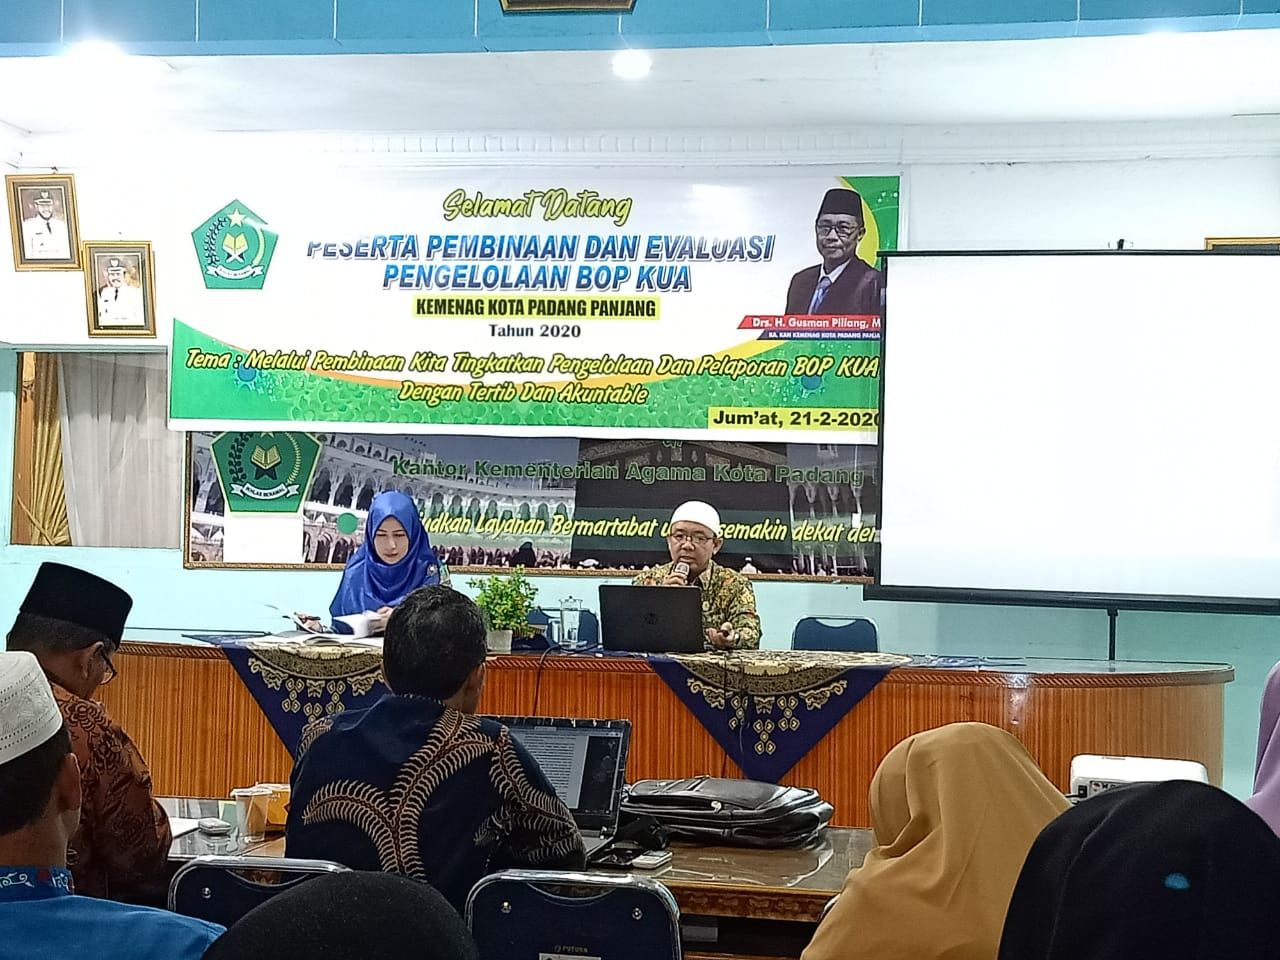 Catatan Penting H Yufrizal Tentang Pengelolaan Bop Kua Kementerian Agama Provinsi Sumatera Barat